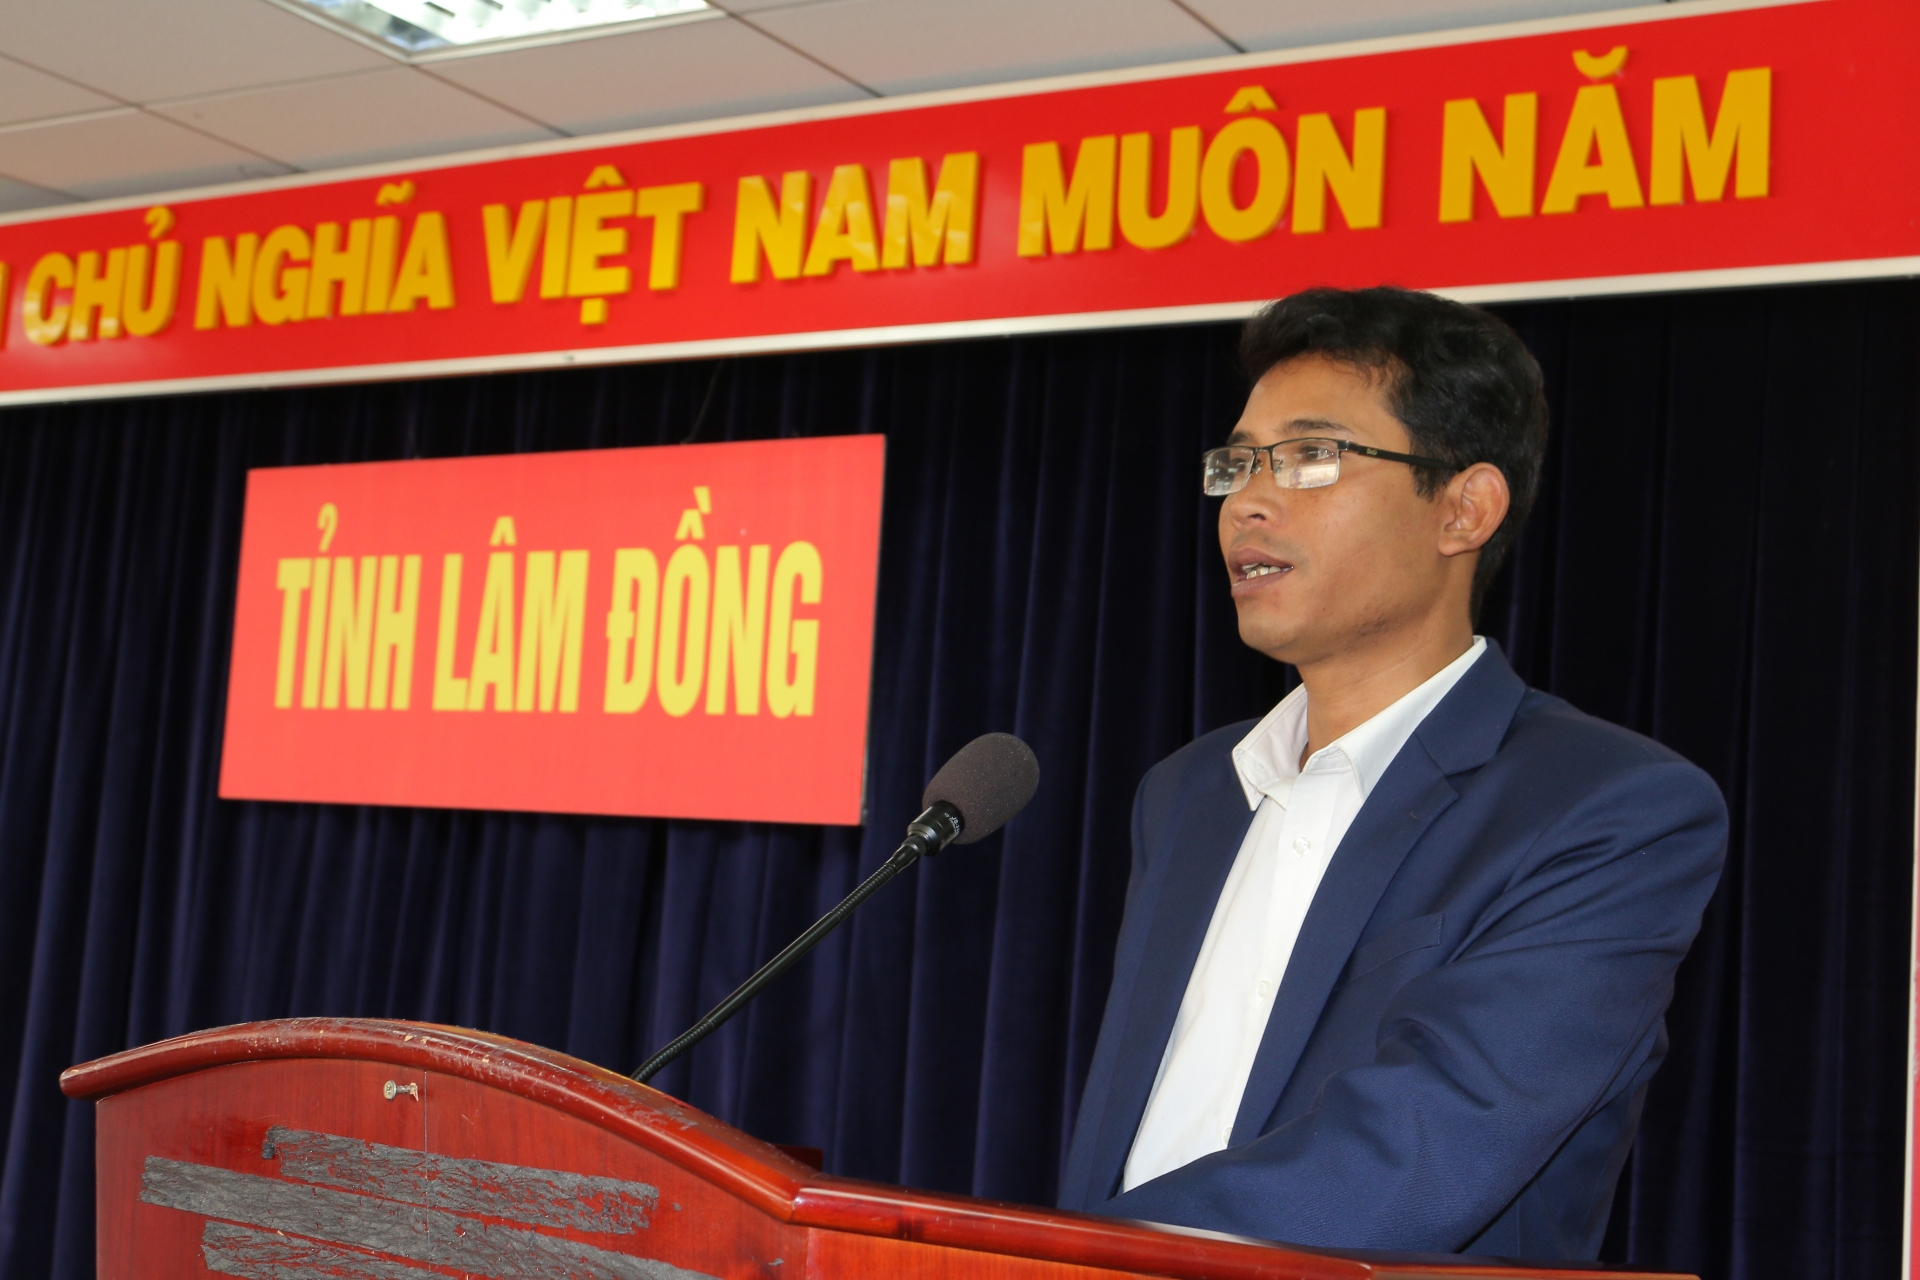 Đồng chí Ndu Ha Biên – Phó Bí thư Tỉnh Đoàn Lâm Đồng truyền đạt các nội dung cơ bản về nghiệp vụ công tác kiểm tra, giám sát của Đoàn